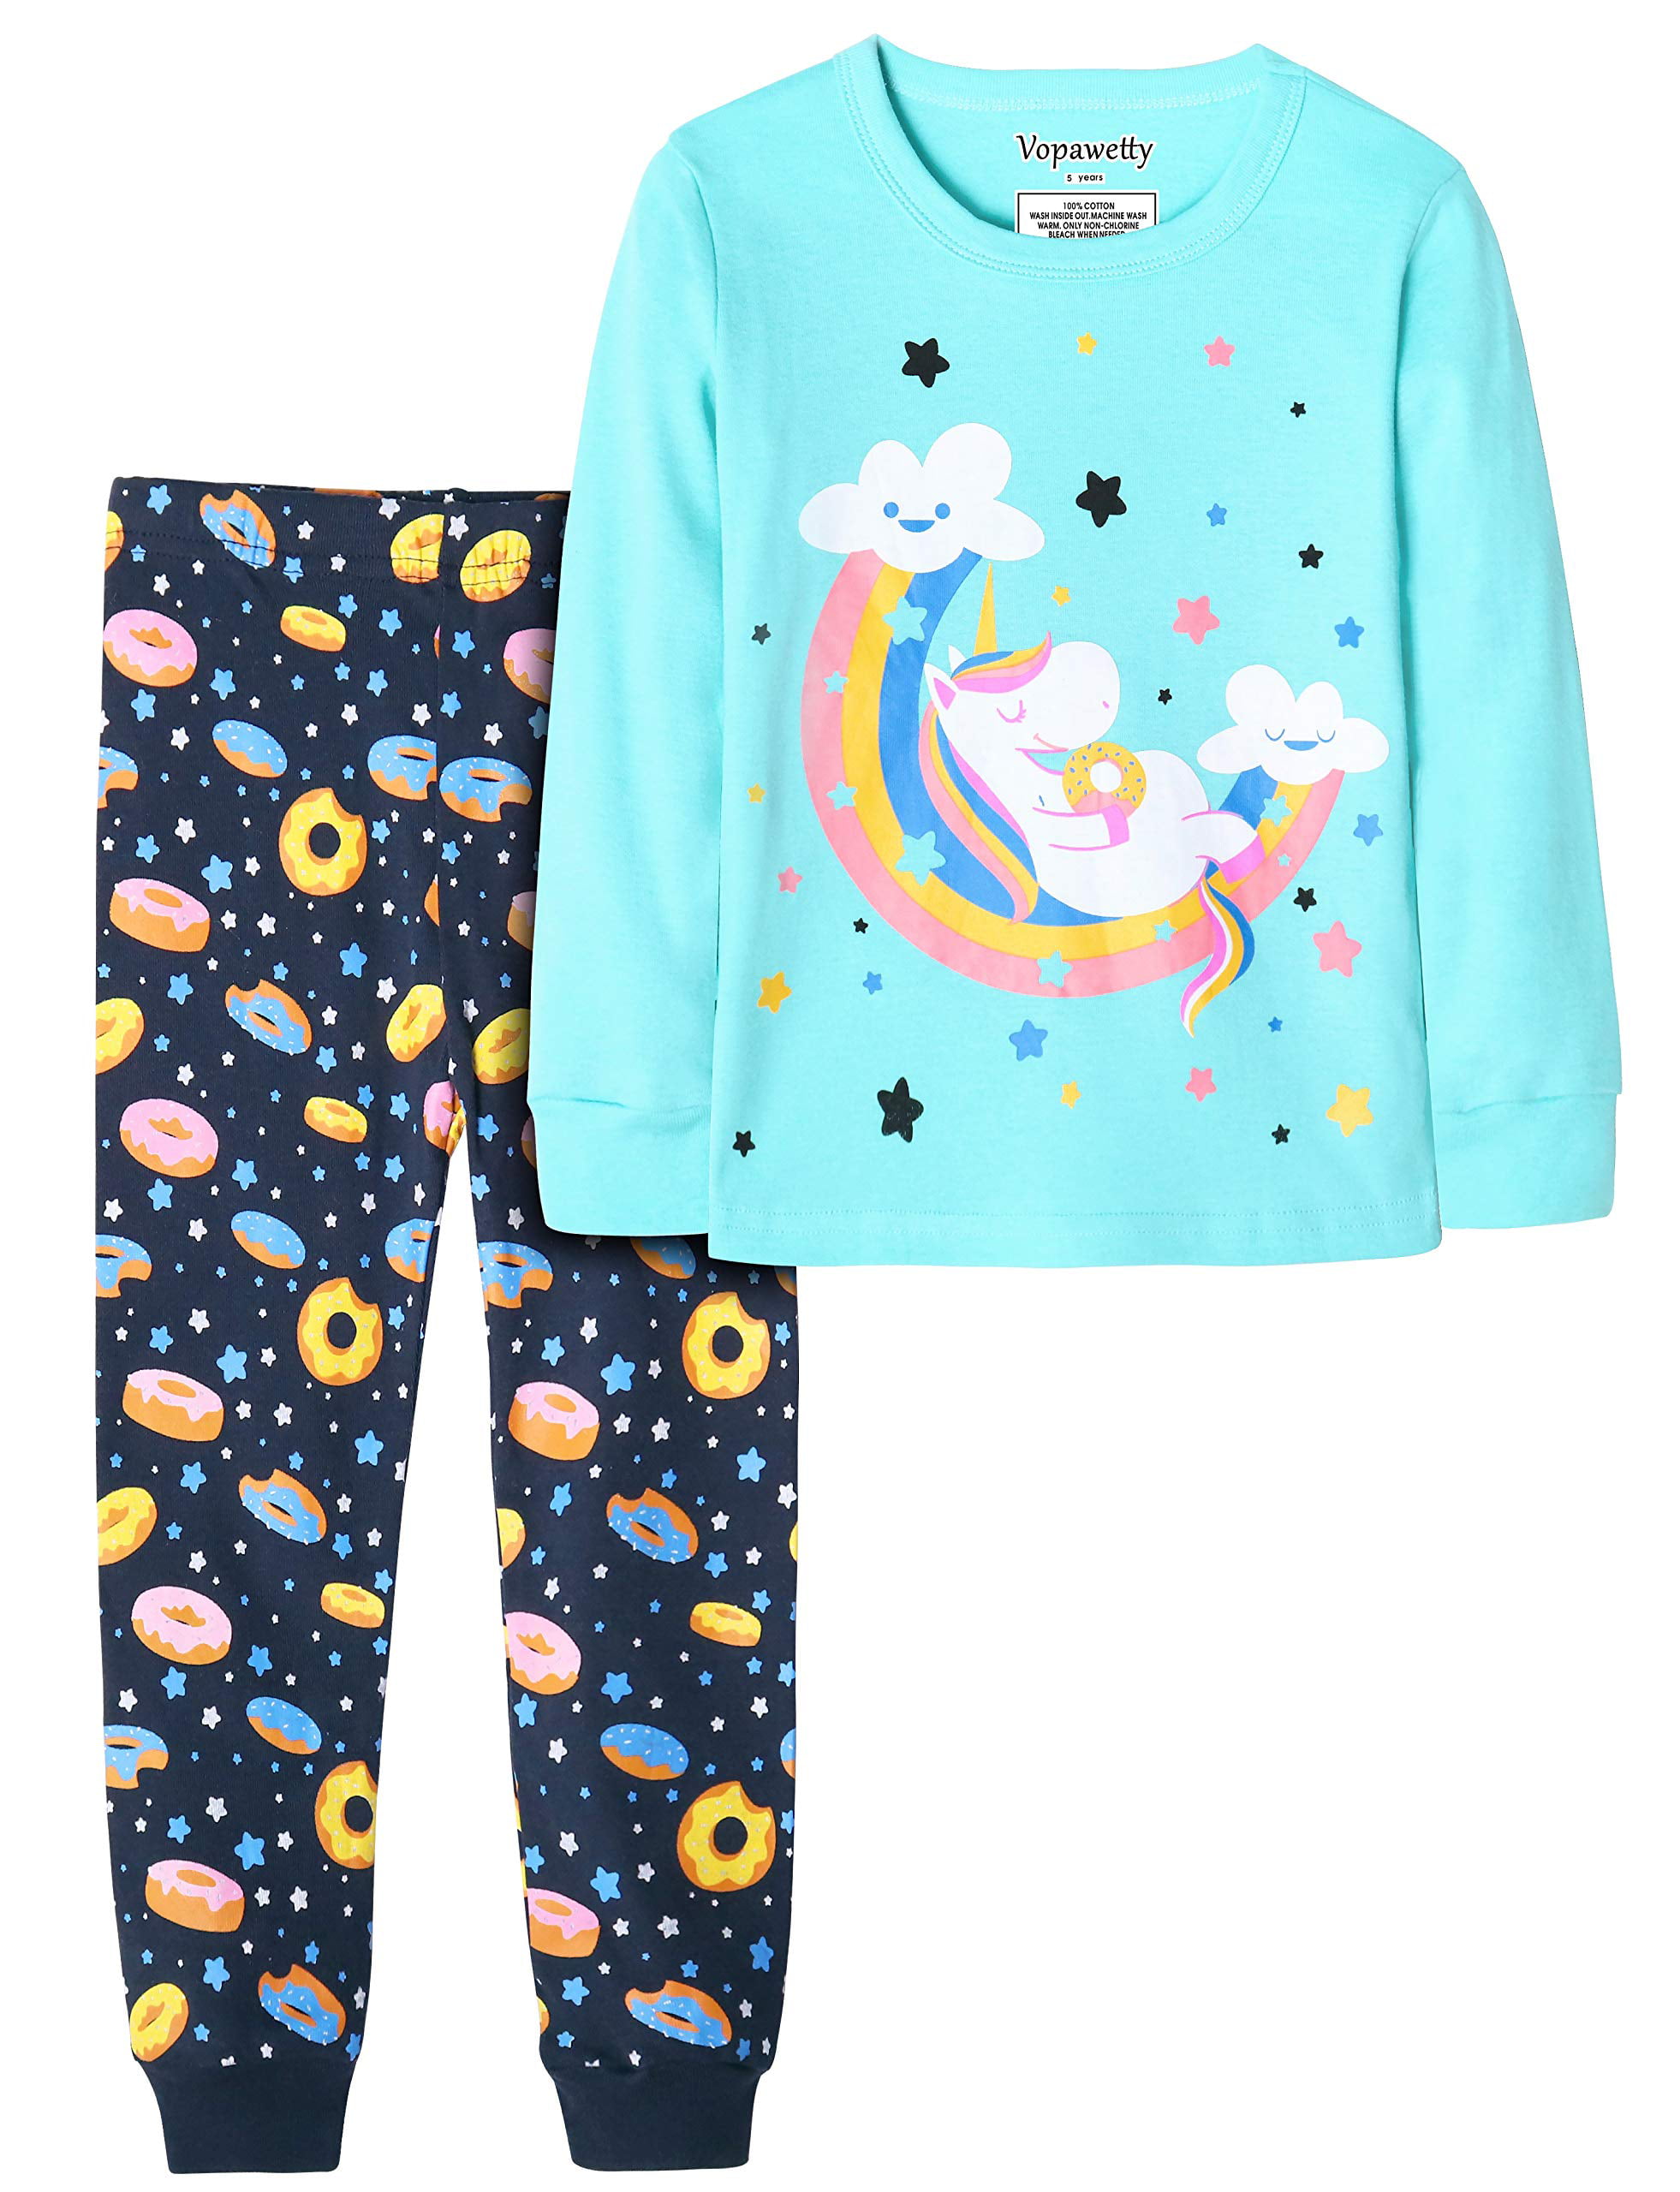 Vopawetty Boys 6-Piece Snug-Fit Cotton Pajama Set Sleepwear